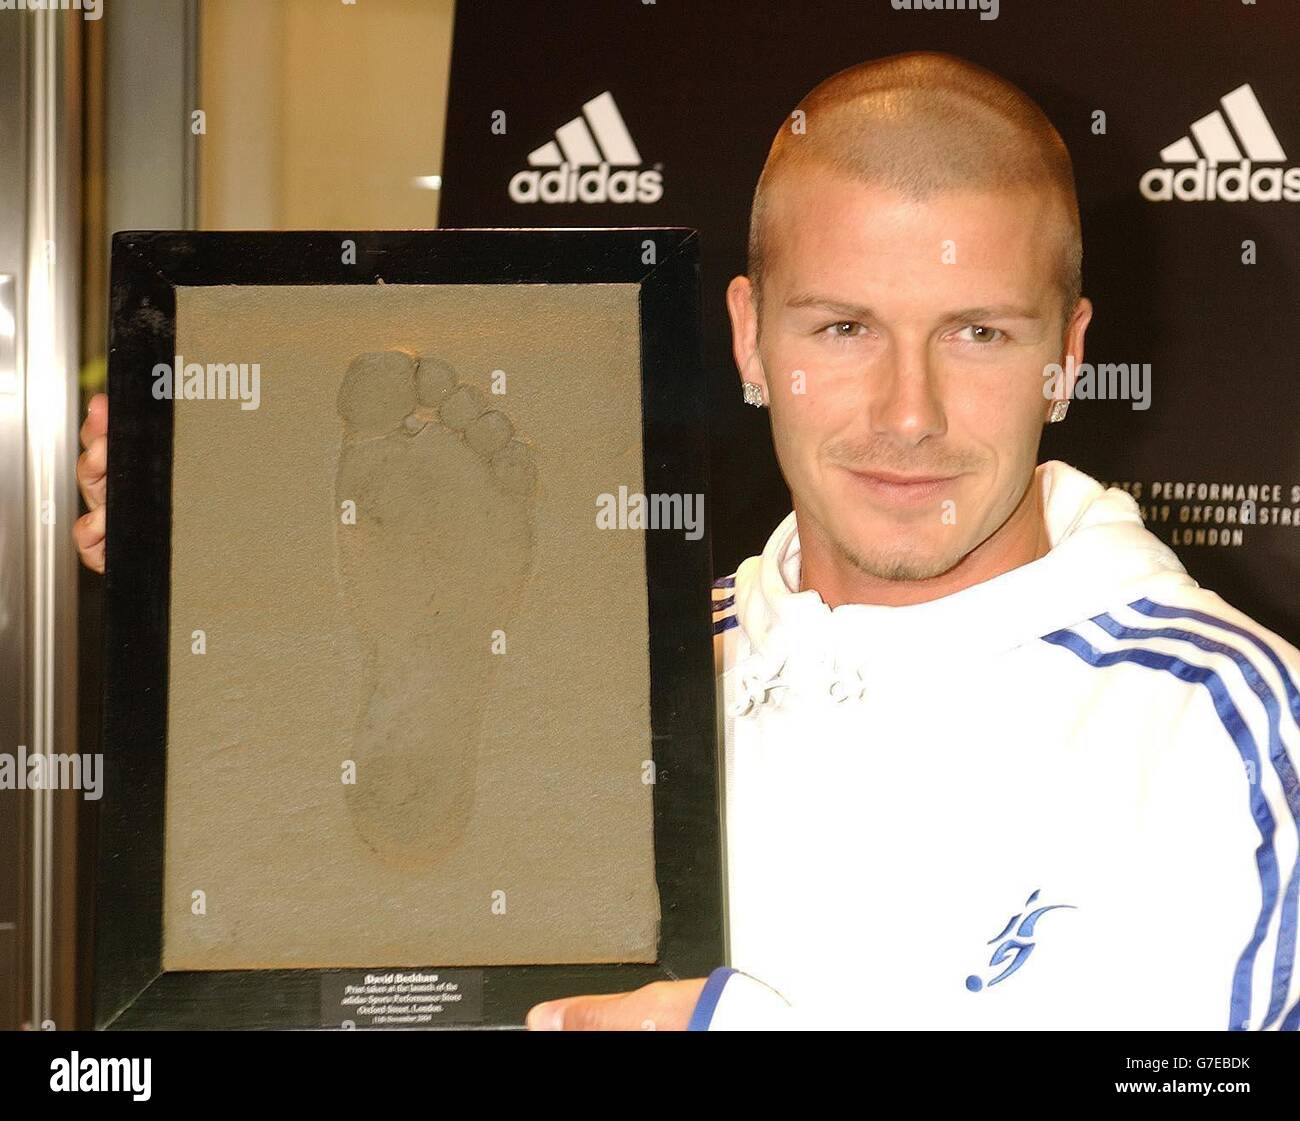 El futbolista del Real Madrid y de Inglaterra David Beckham con un yeso de  hormigón de su pie derecho, realizado en la tienda Adidas en Oxford Street,  Londres. La tienda Adidas abre